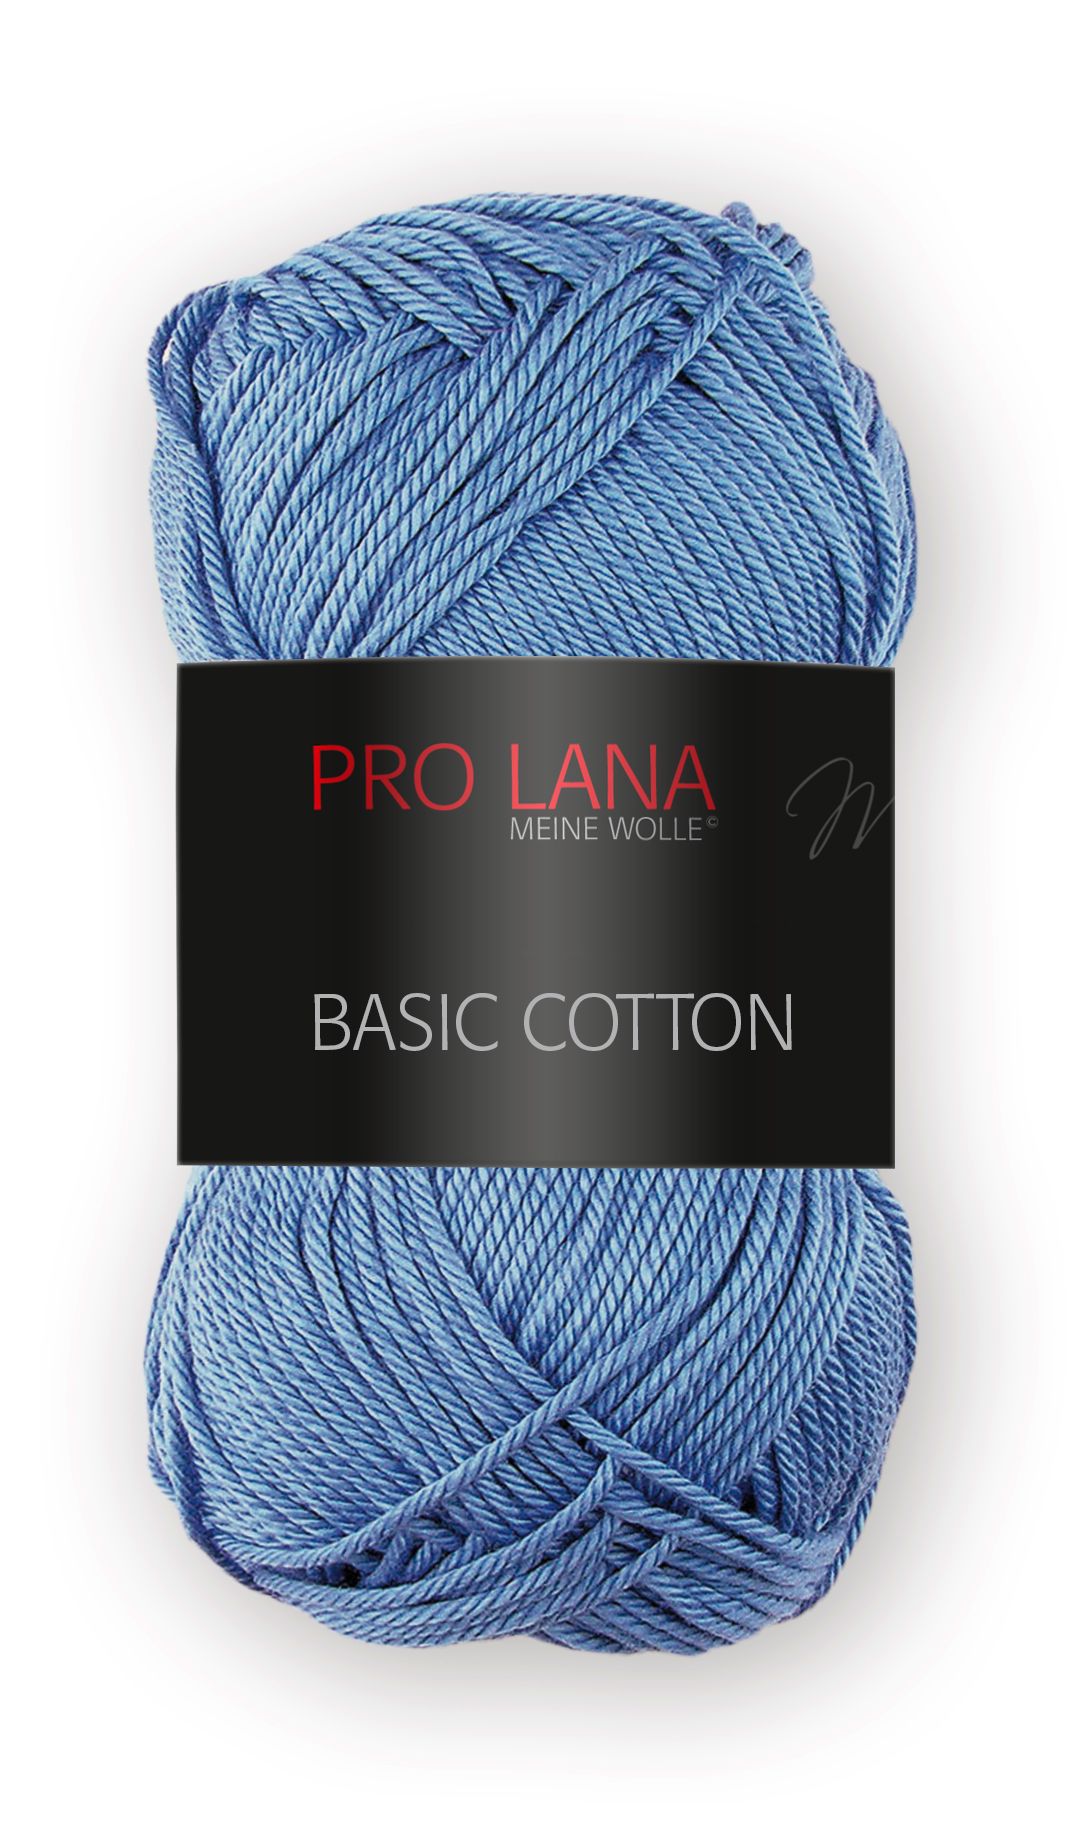 Pro Lana Basic Cotton 50g - Himmelblau 56